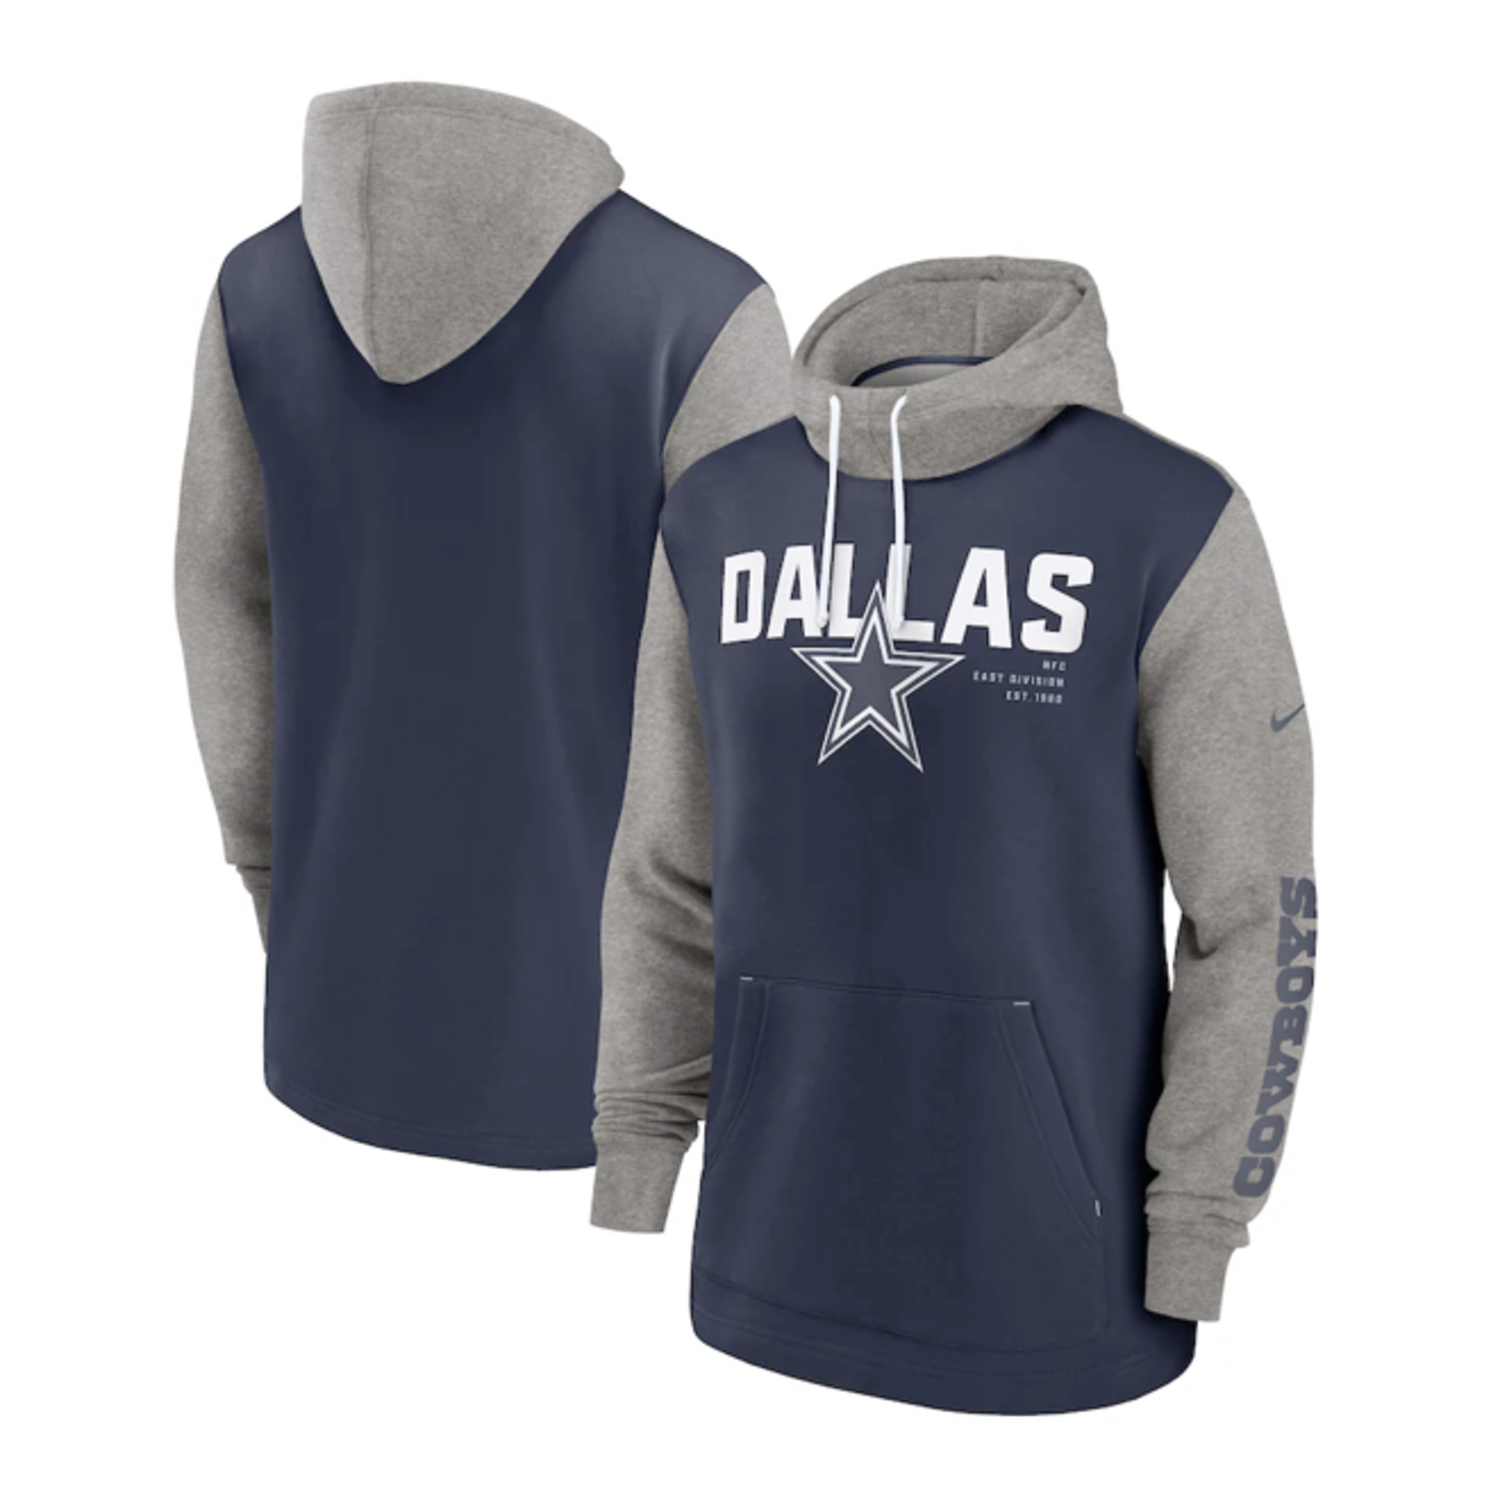 Dallas Cowboys Fleece Jacket - Dallas Cowboys Home